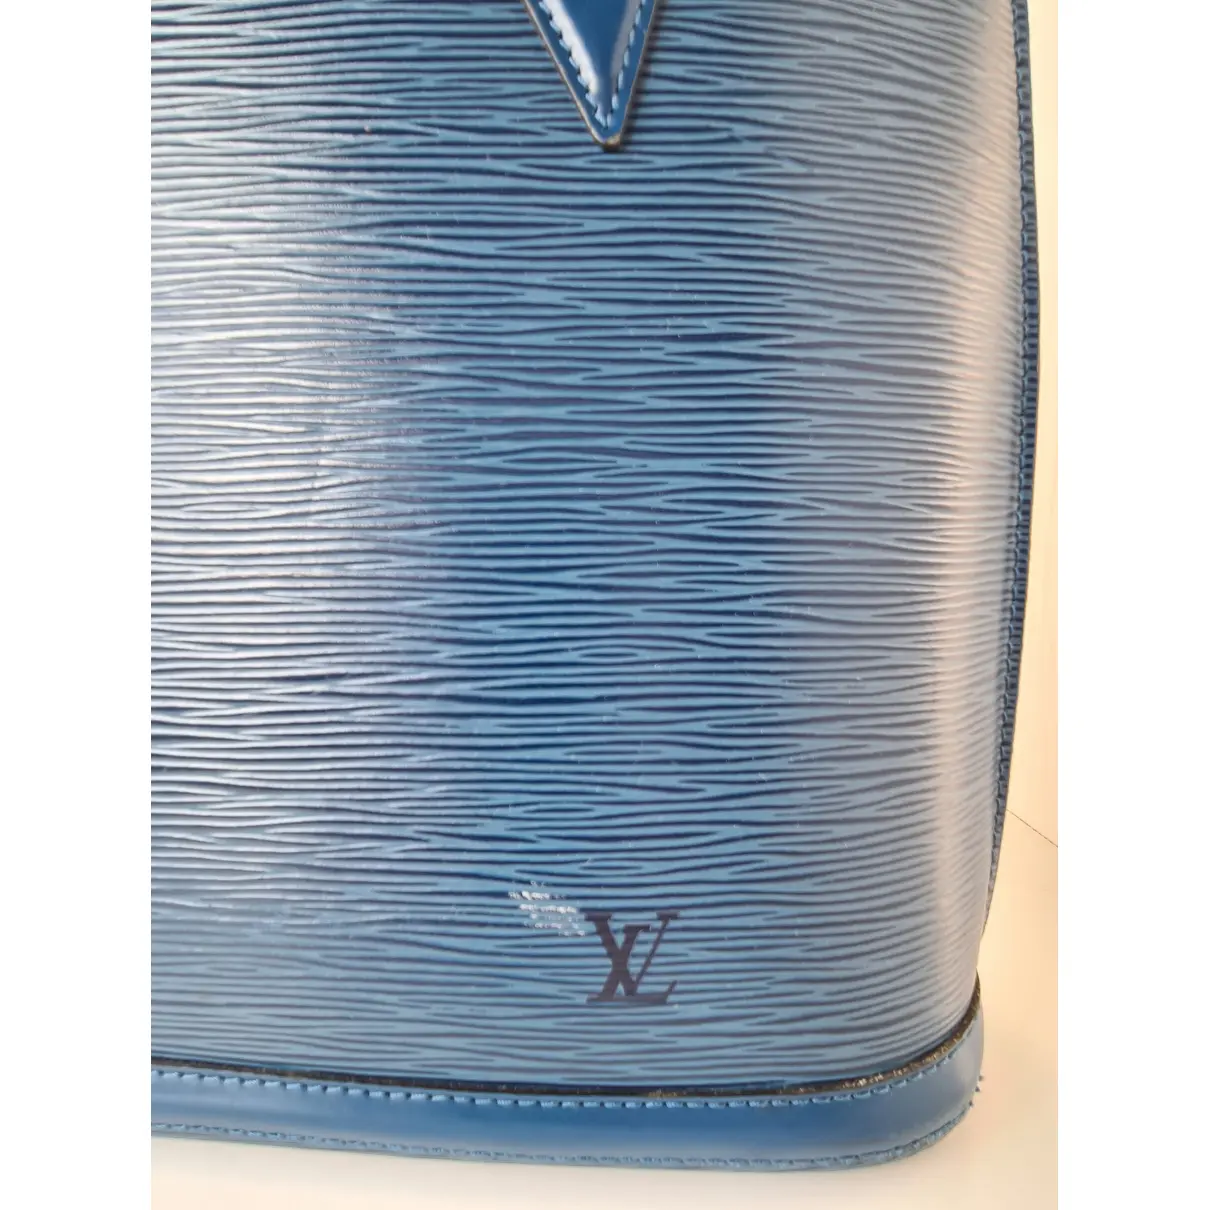 Buy Louis Vuitton Lussac leather handbag online - Vintage